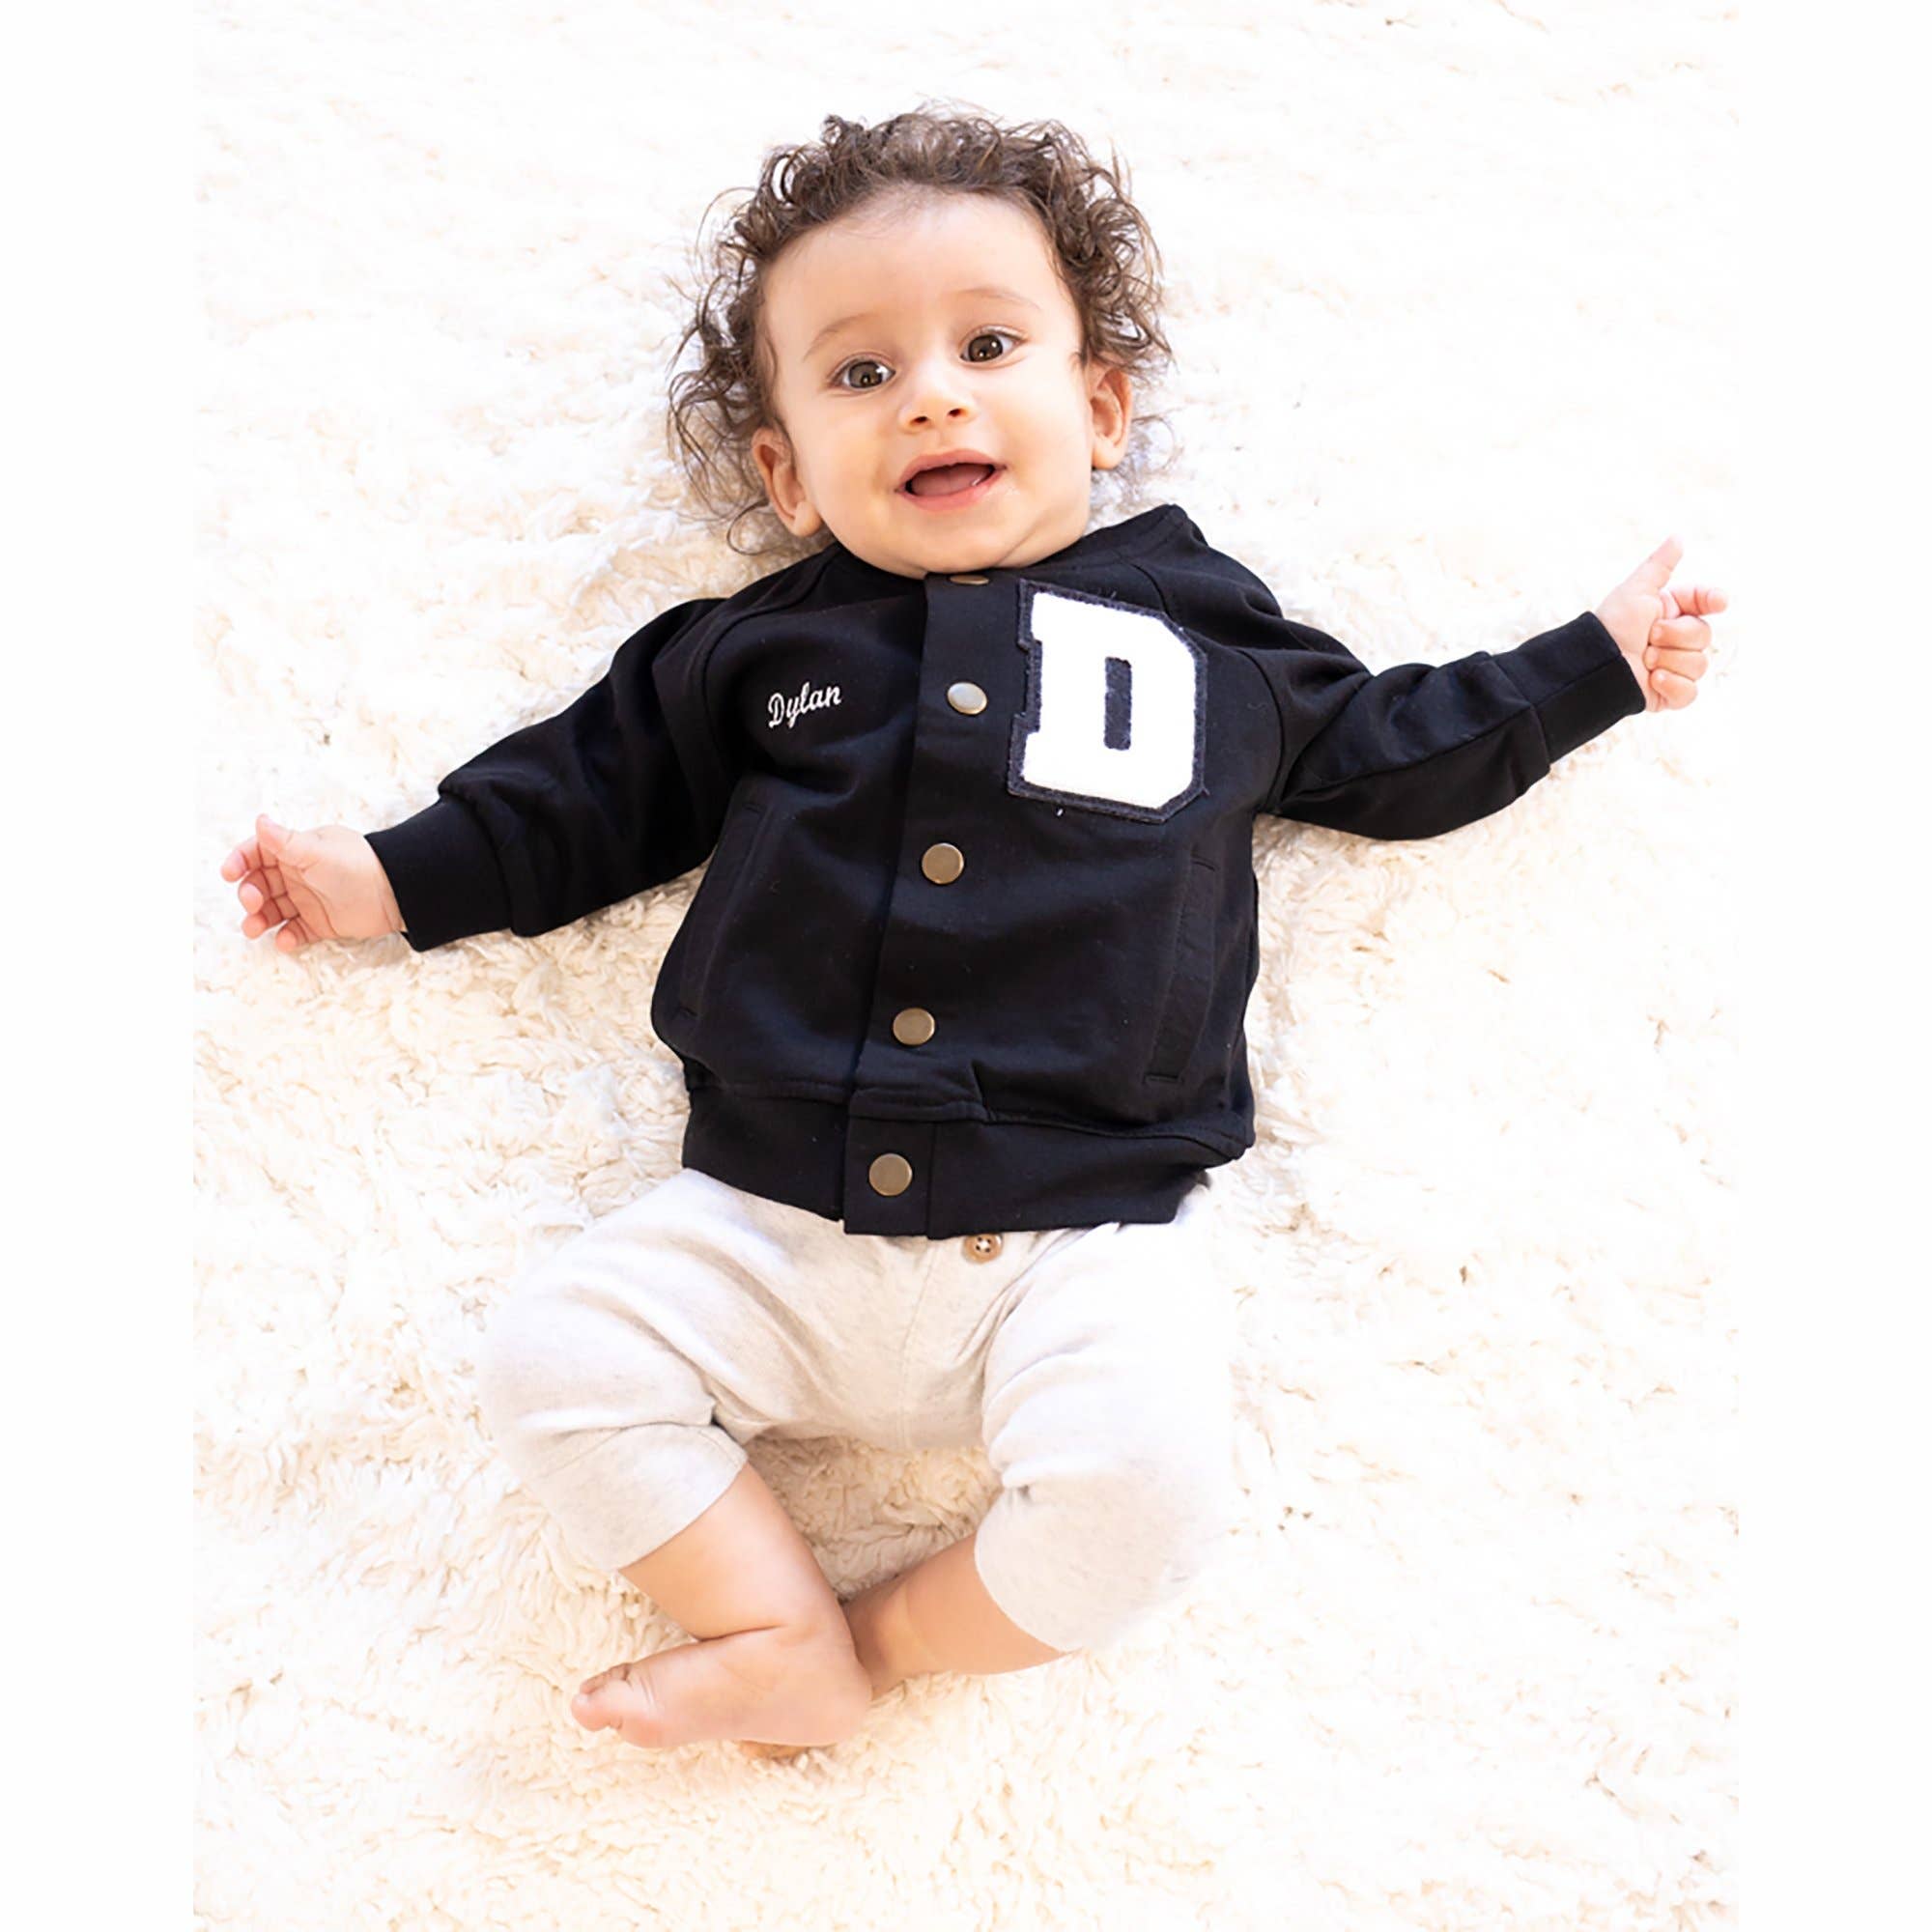 Varsity Sweater Baby Boy Outfit • Ropa de bebé única • Regalo de bebé personalizado • Traje de niño pequeño • Chaqueta letterman personalizada Ropa Ropa para niño Disfraces 